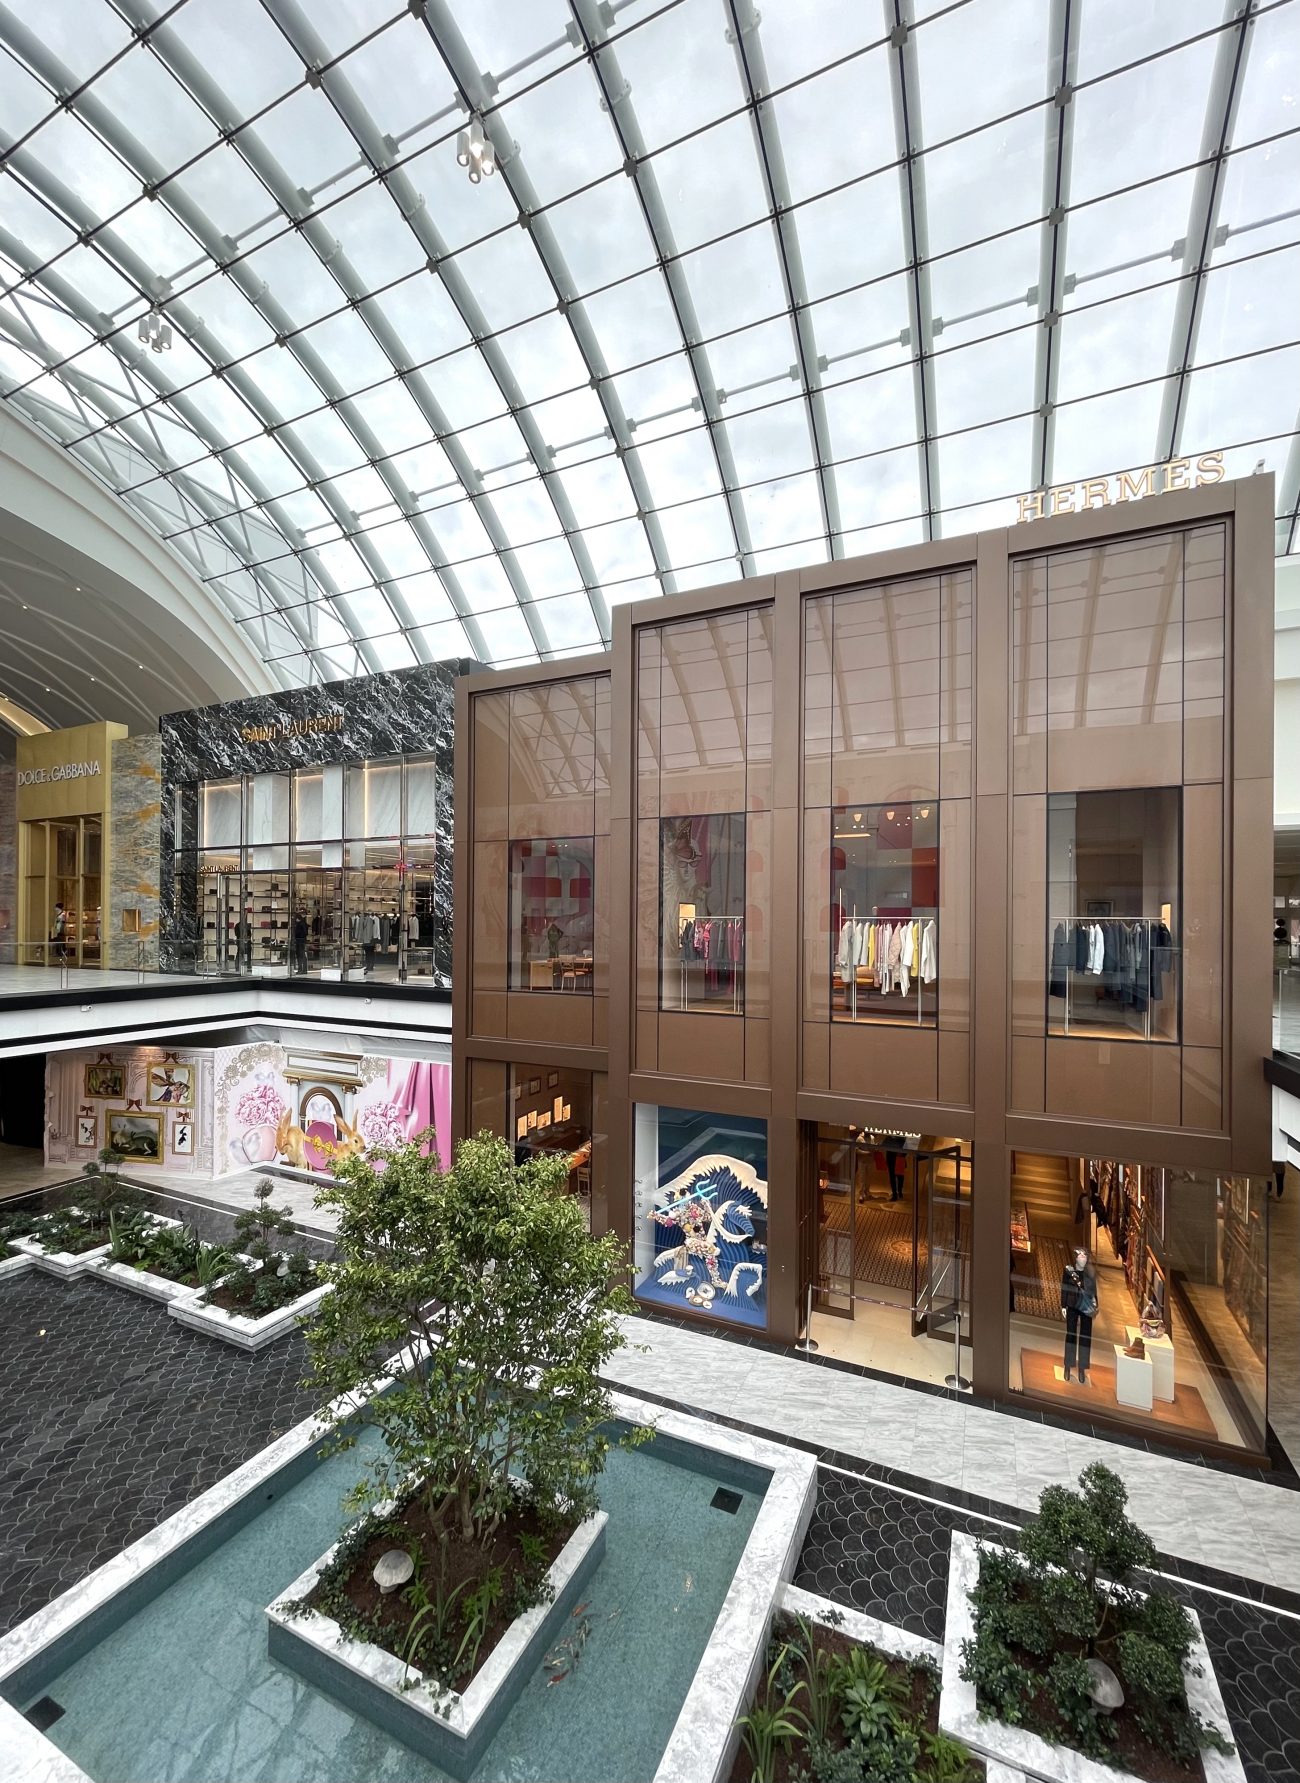 American Dream Mall Designer Stores Usa